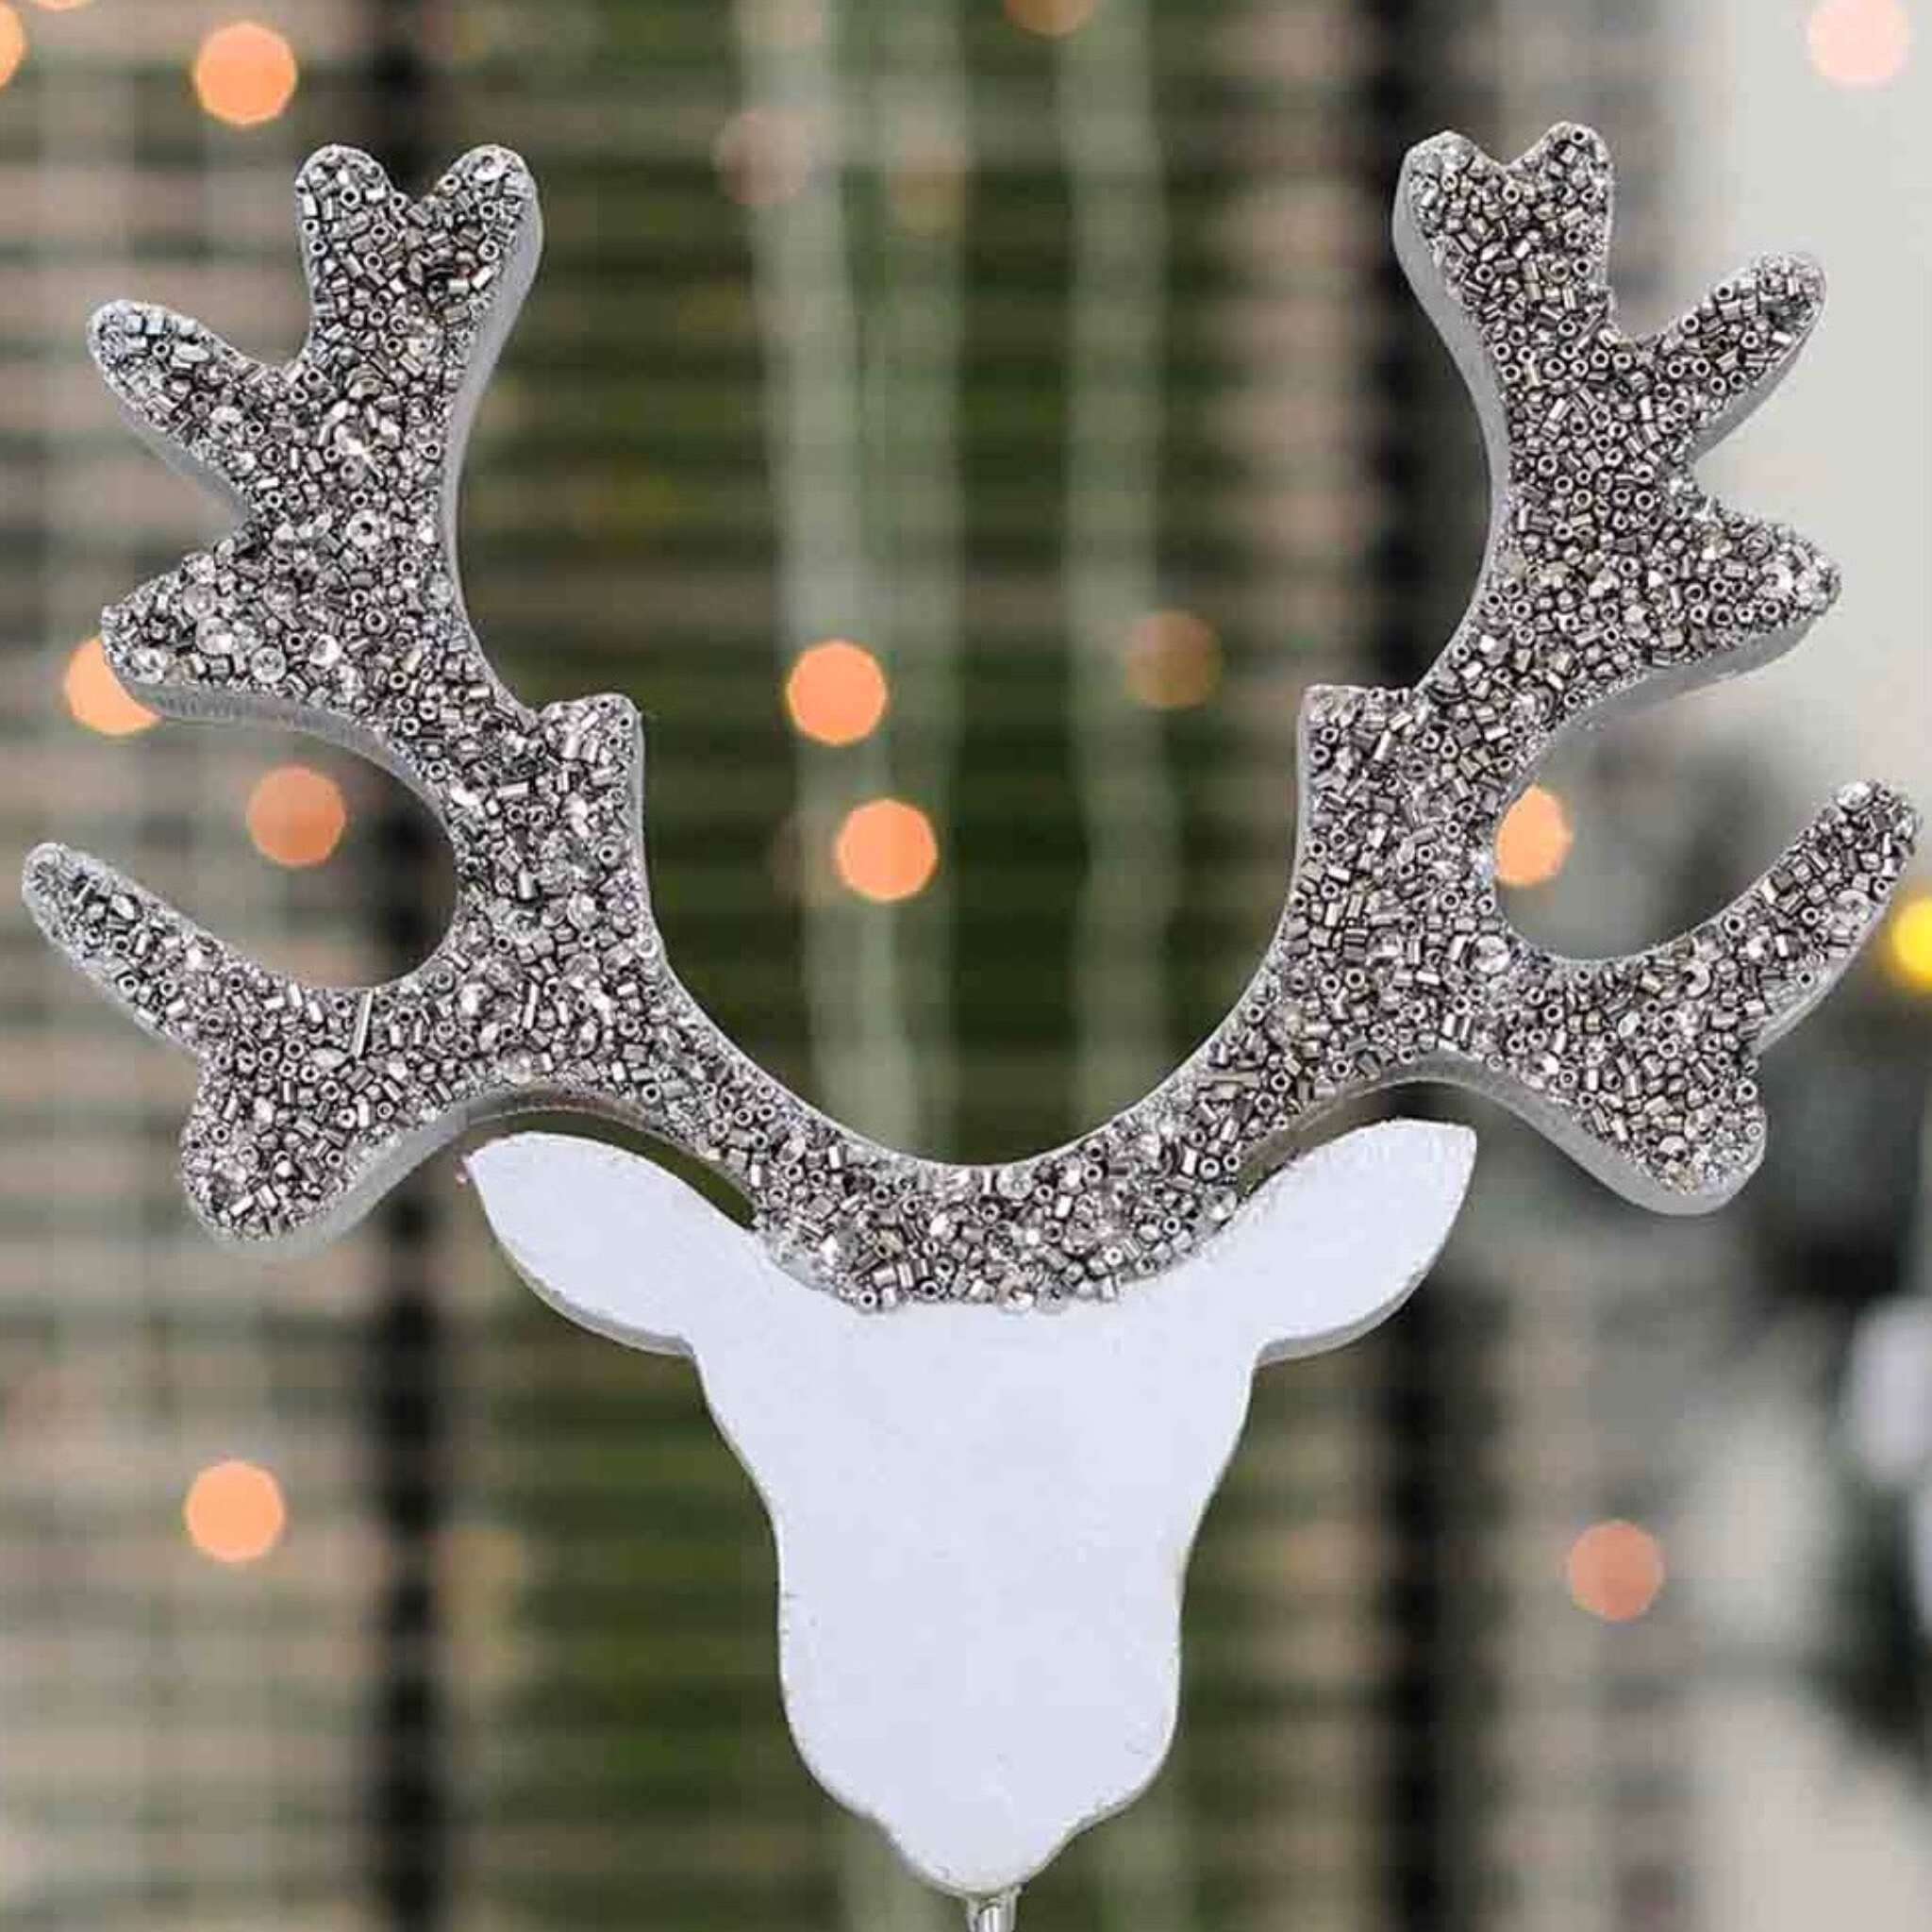 Oh Deer! Wood Sculpture # 1 in Silver